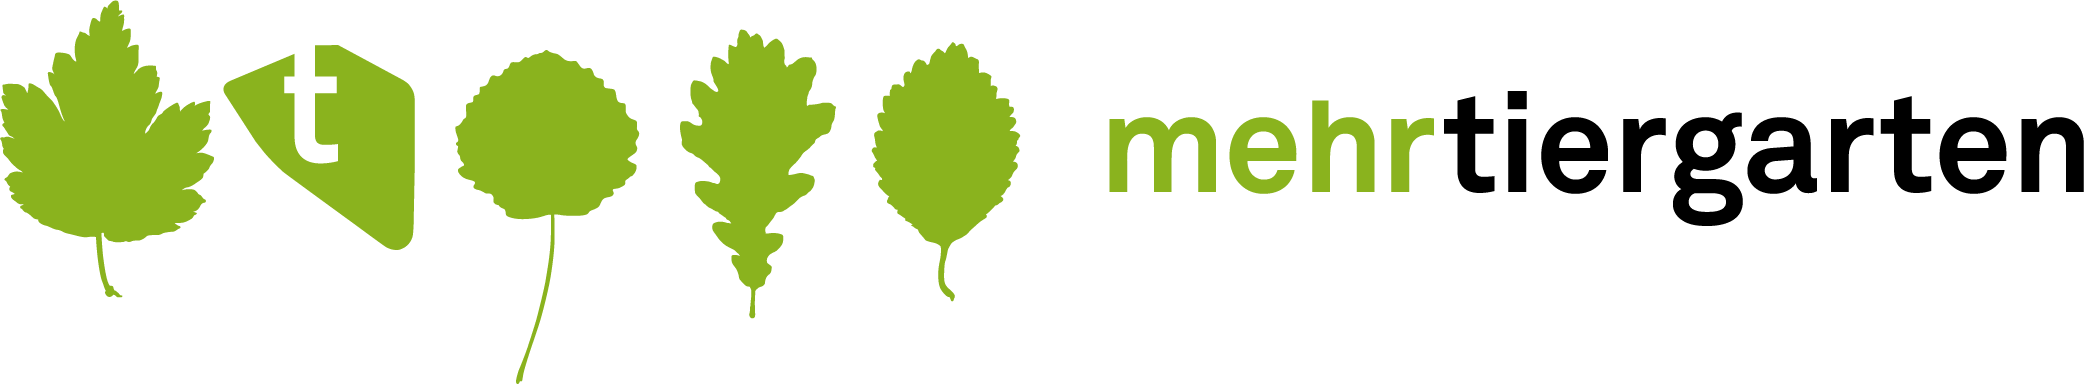 Logo mehrtiergarten